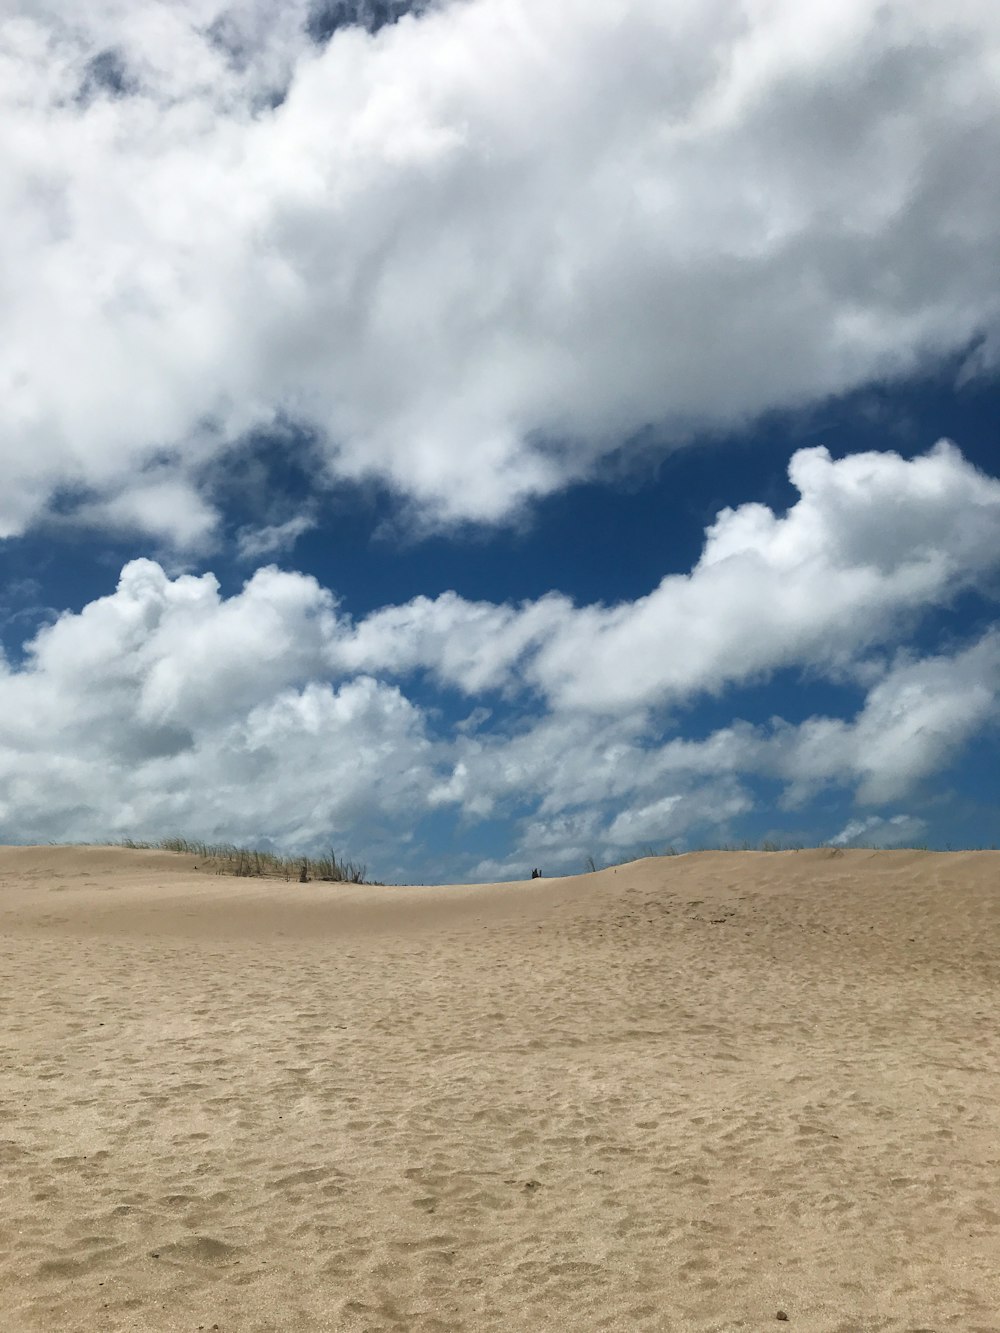 푸른 하늘 아래 갈색 모래와 낮에는 흰 구름